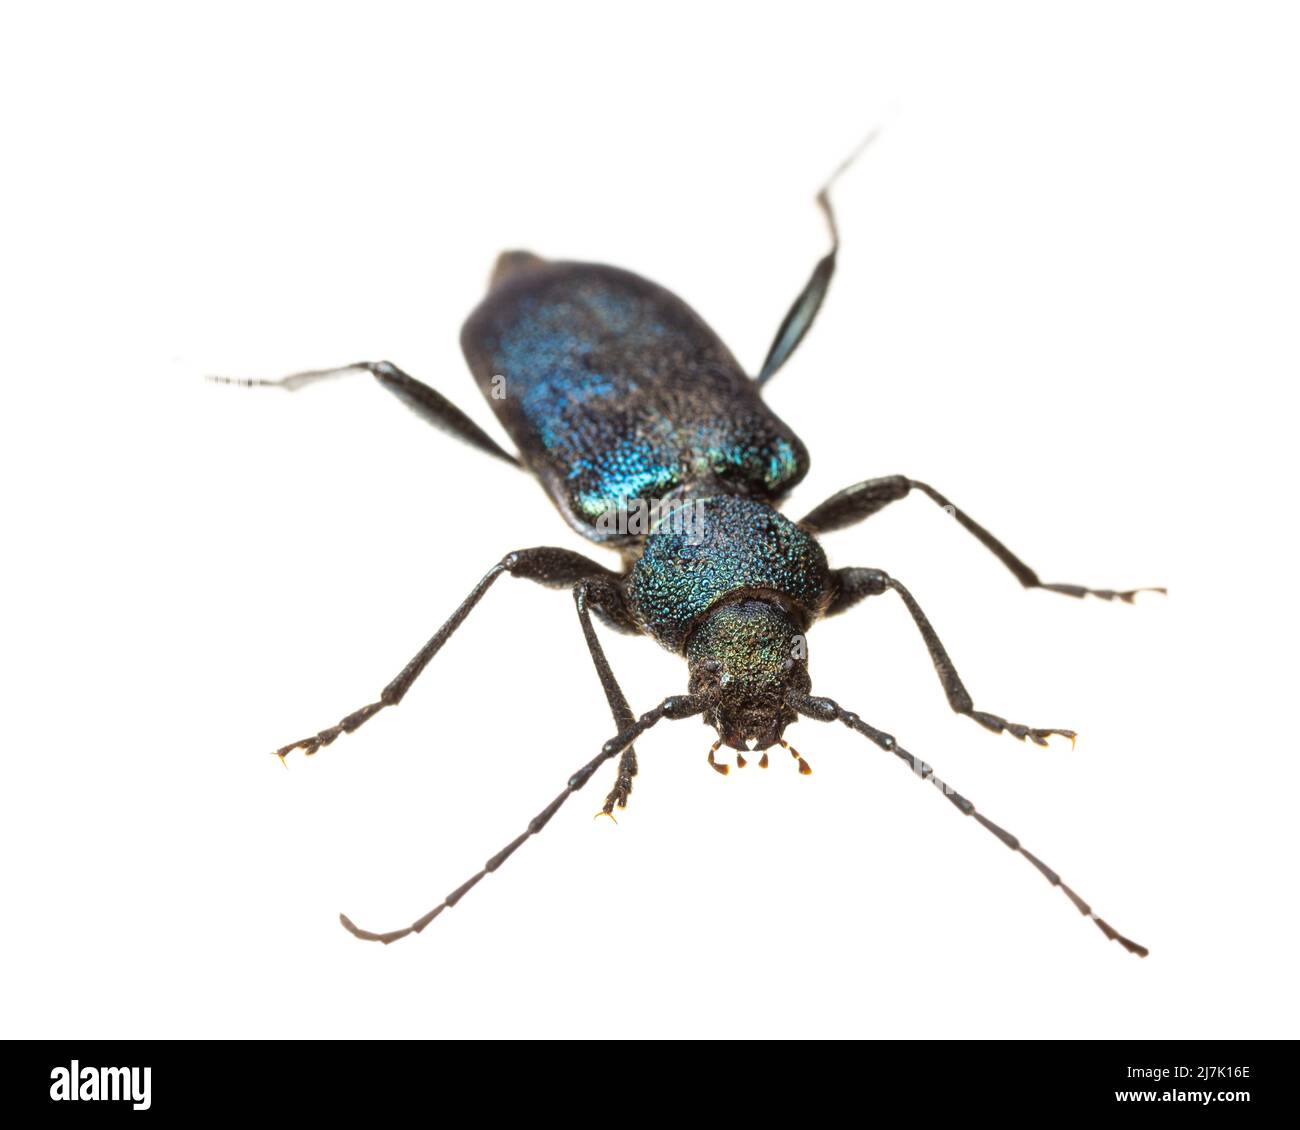 Insectes d'europe - coléoptères : vue de face de Callidium violaceum ( blauvioetter allemand Scheibenbock ) isolé sur fond blanc Banque D'Images